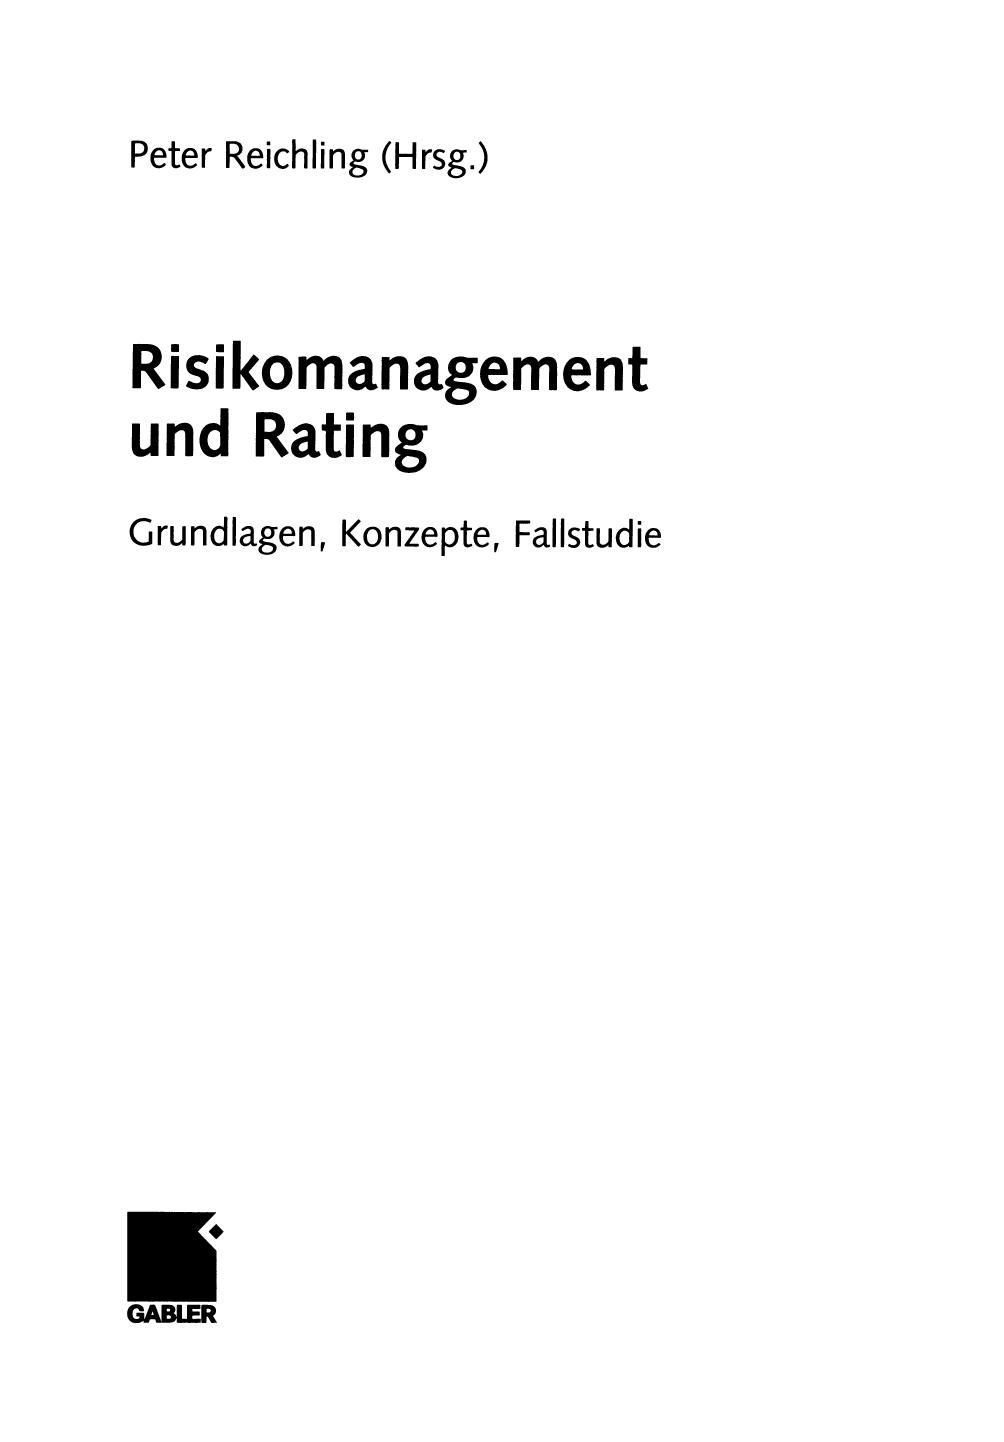 Risikomanagement und Rating: Grundlagen, Konzepte, Fallstudie